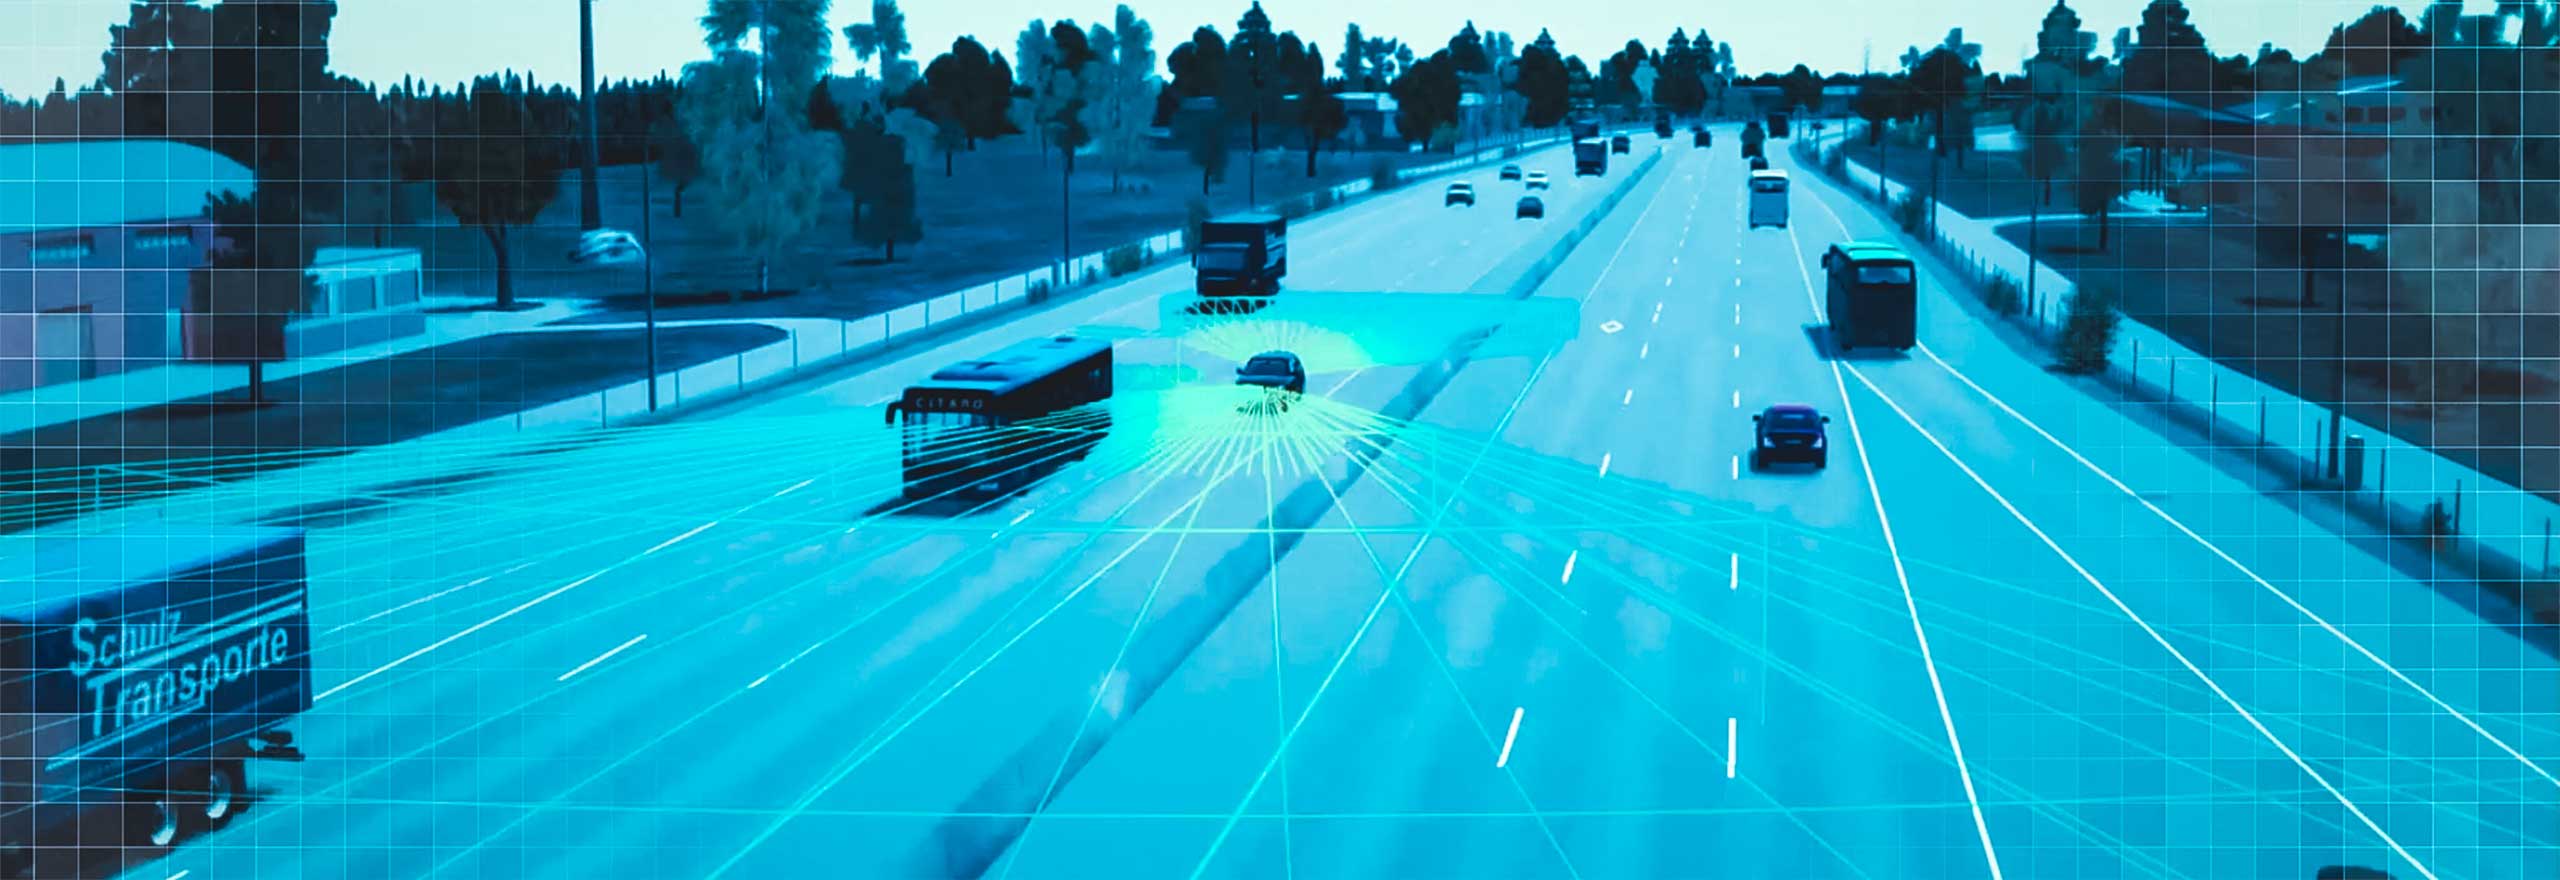 Autonomous cars on a roadway